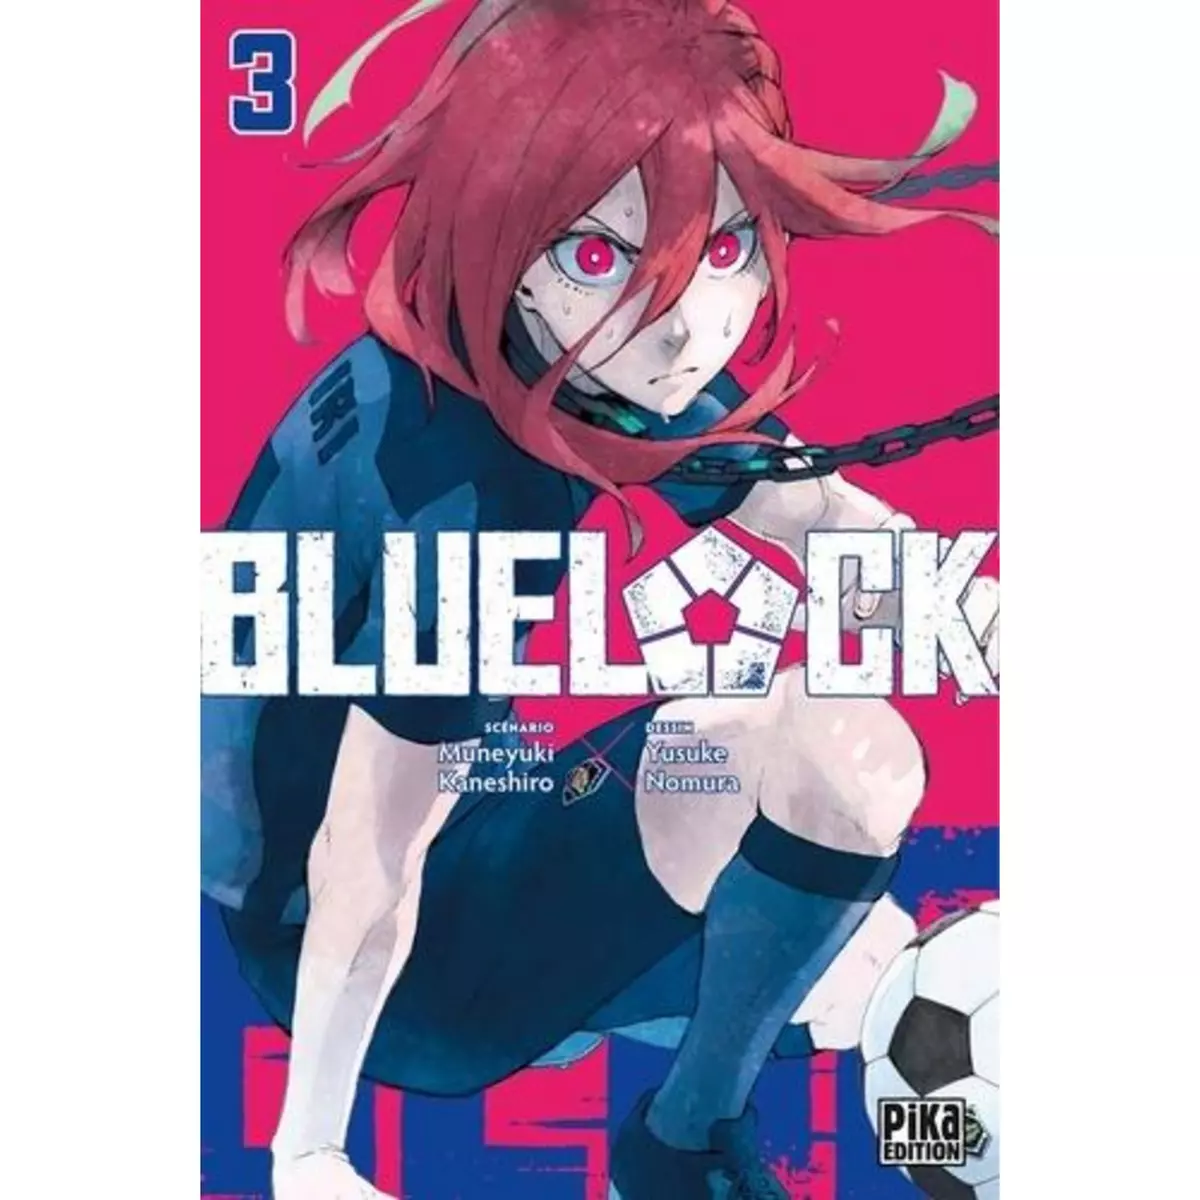  BLUE LOCK TOME 3 , Kaneshiro Muneyuki